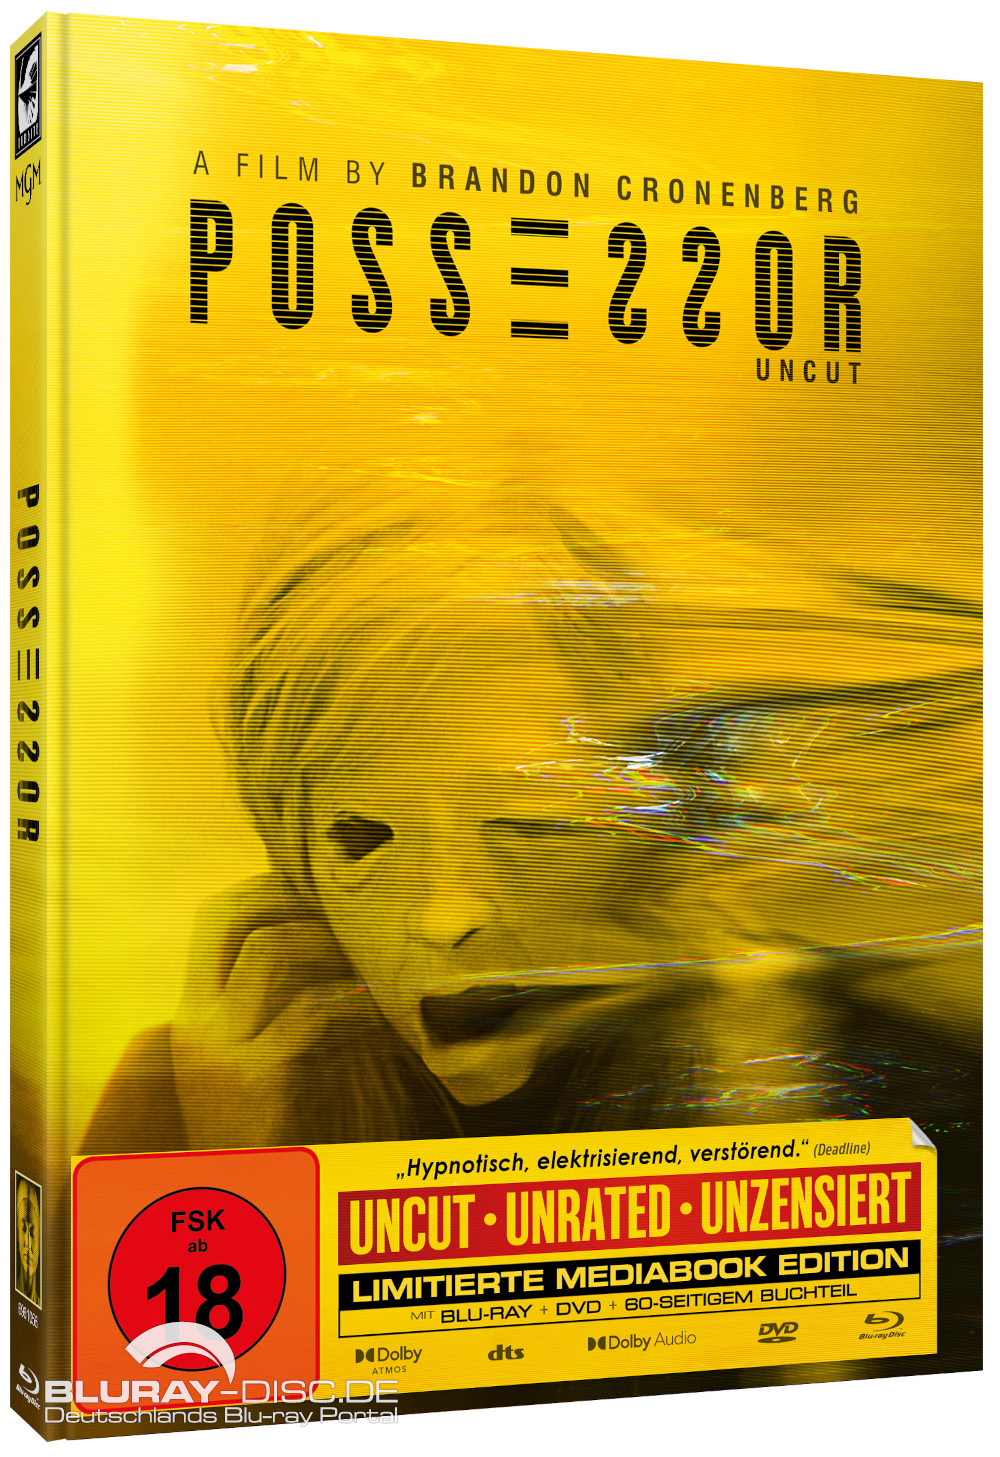 Possessor-HD-Mediabook-Galerie-02.jpg